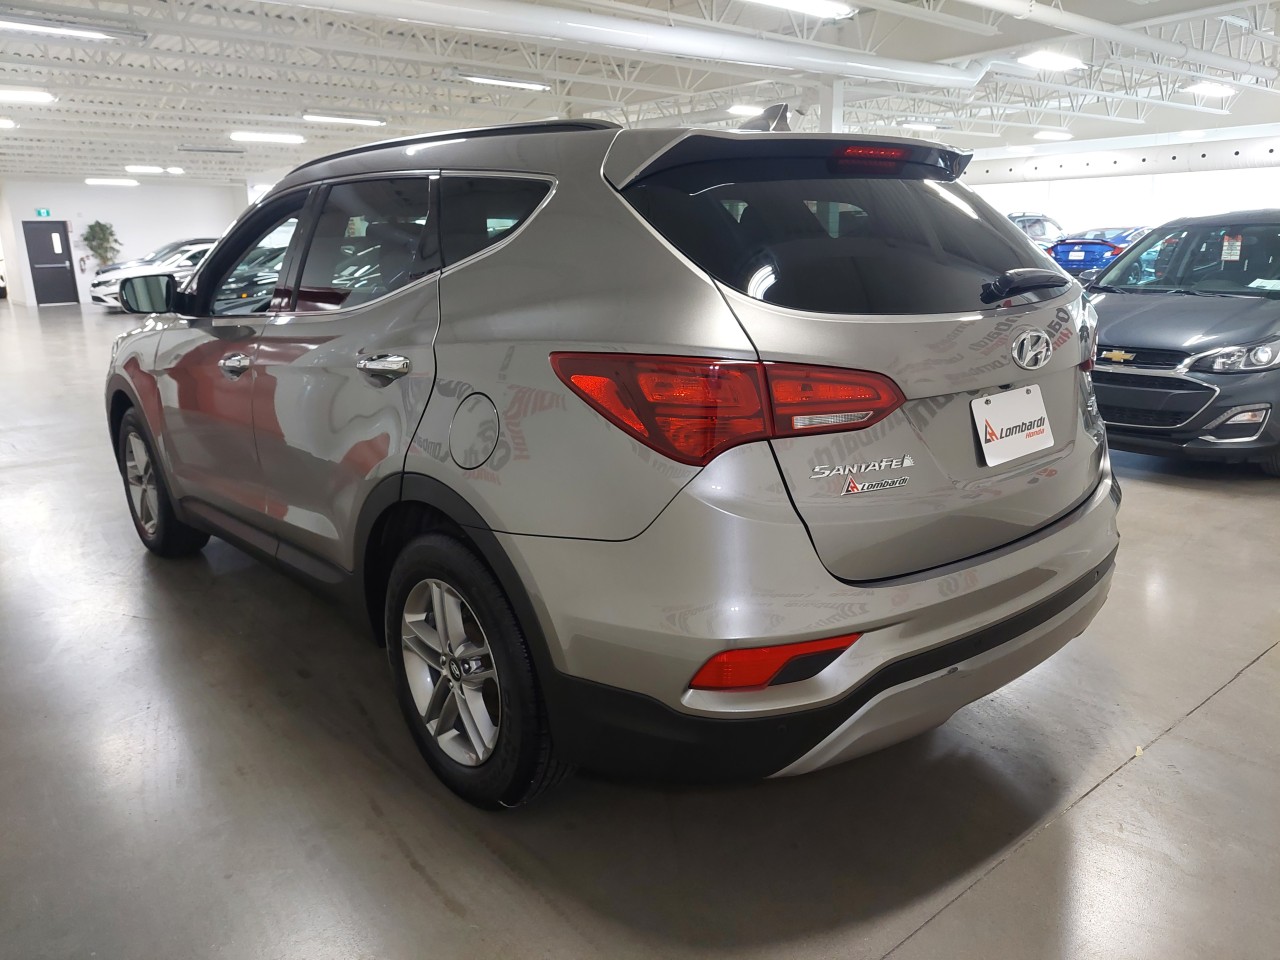 2018 Hyundai Santa Fe Sport Premium Main Image